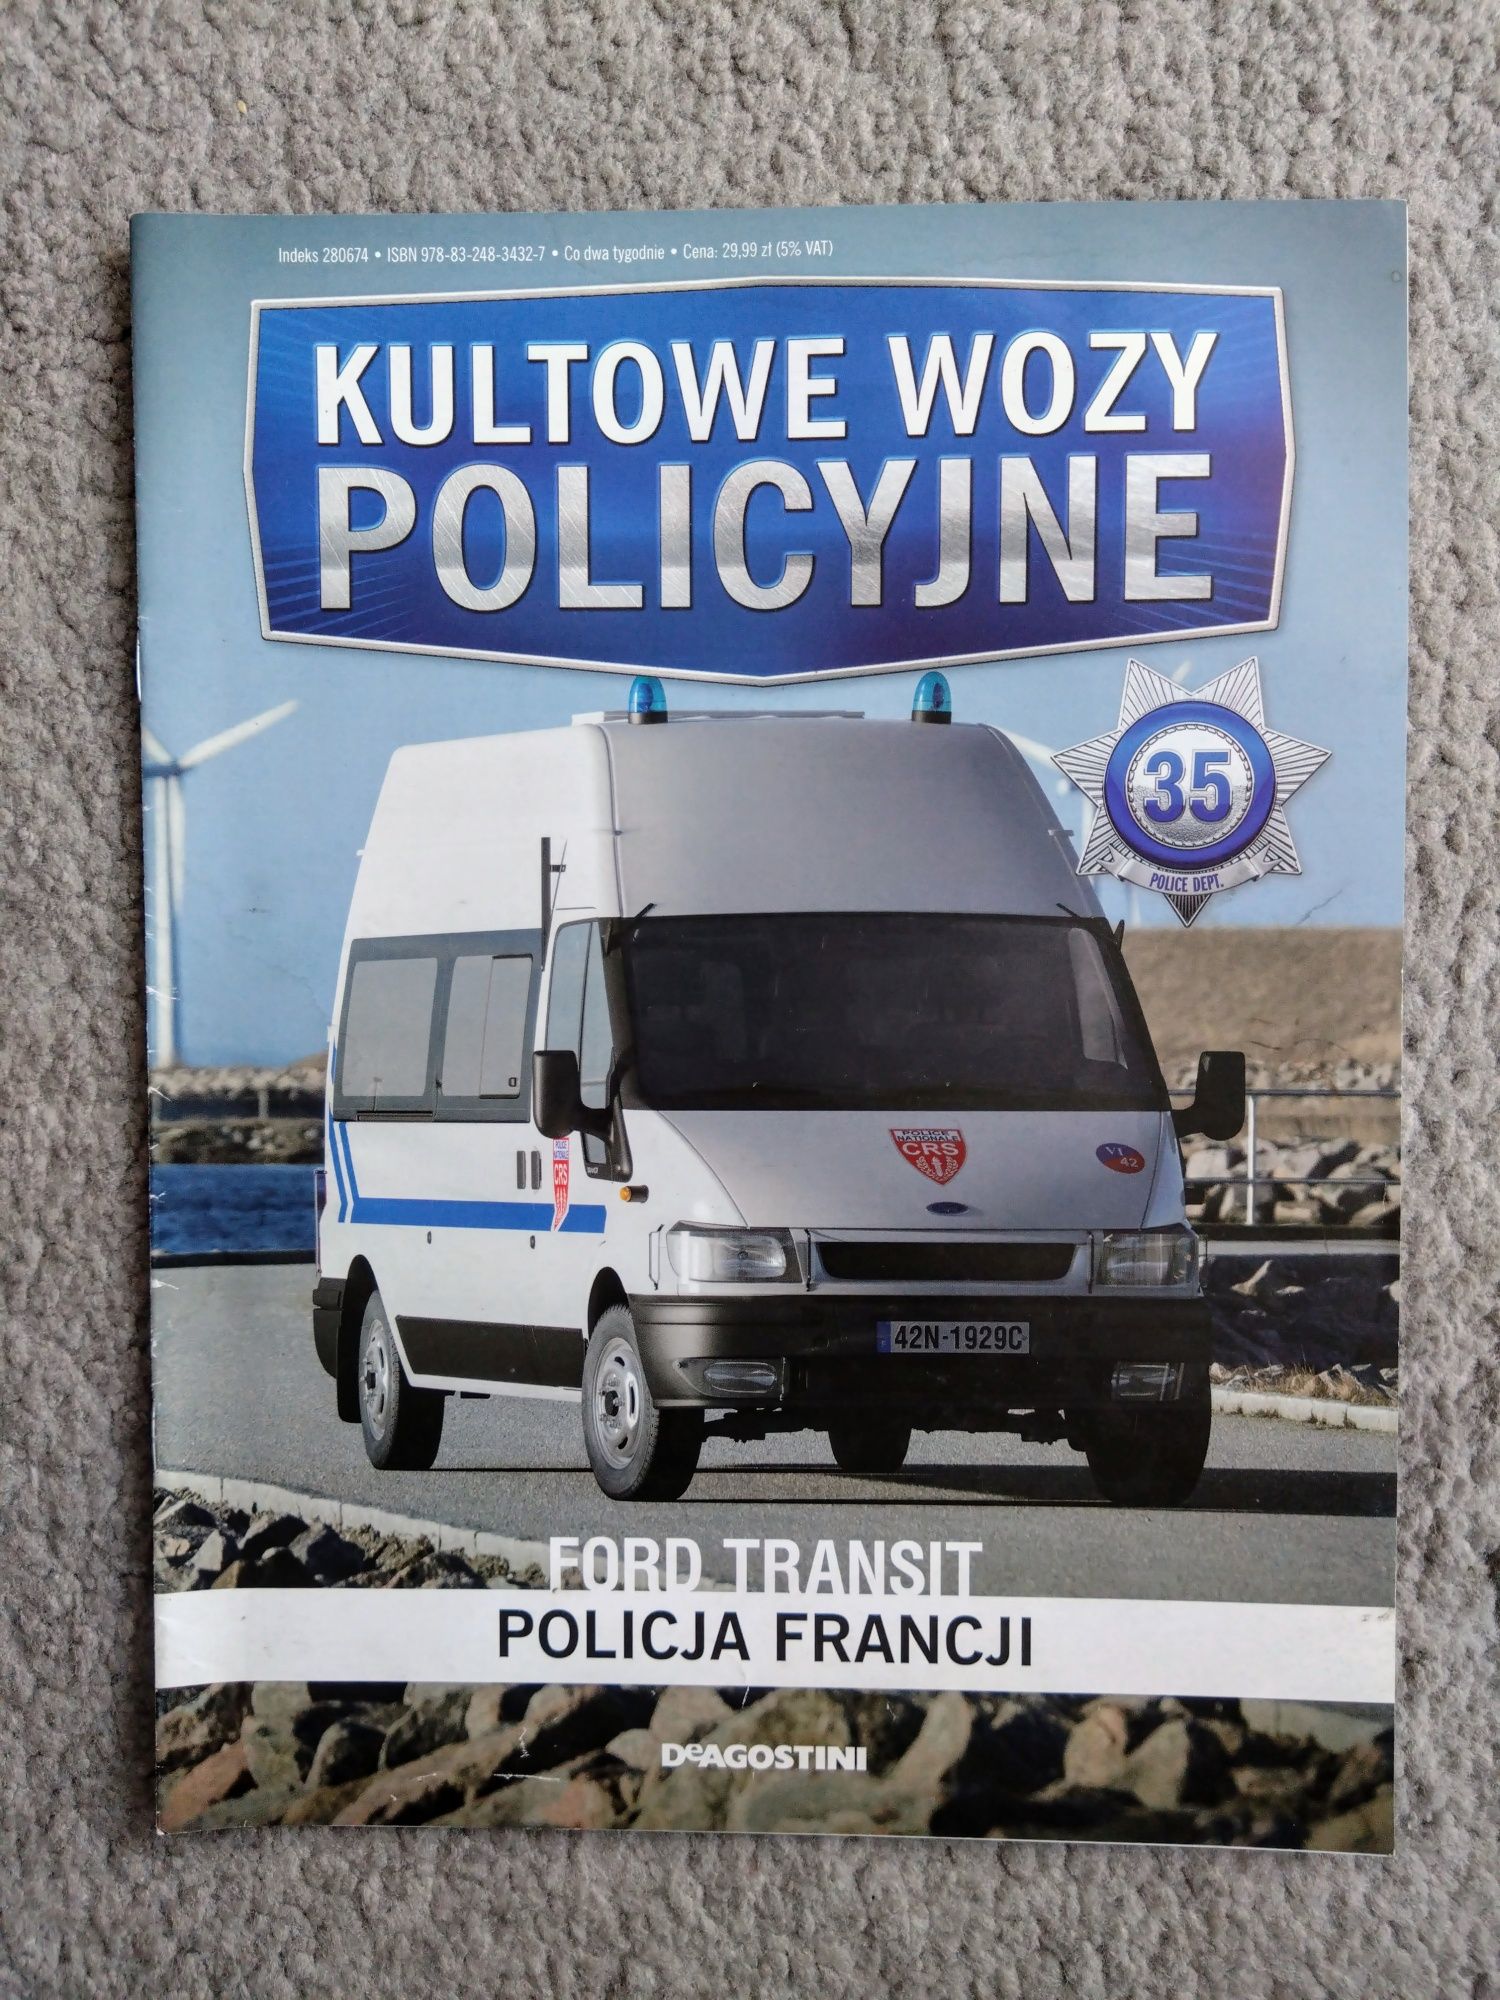 Kultowe Wozy Policyjne nr 35 - Ford Transit Policja Francji